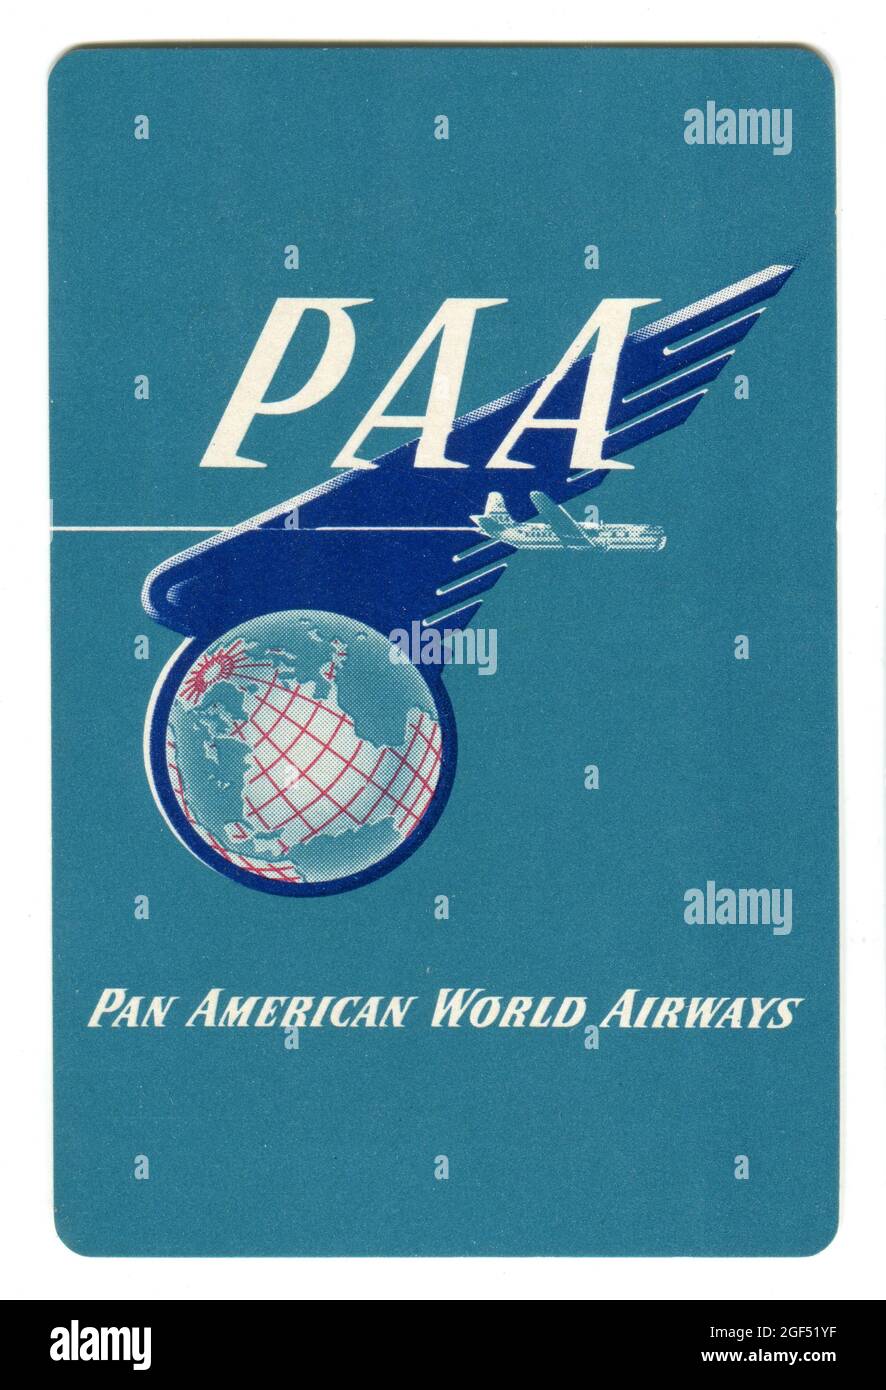 Eine Spielkarte aus den frühen 1950er Jahren, die Pan American World Airways fördert. Das Design zeigt ein Pan am Boeing 377 Stratocruiser Flugzeug, das vor dem Firmenlogo fliegt. Stockfoto